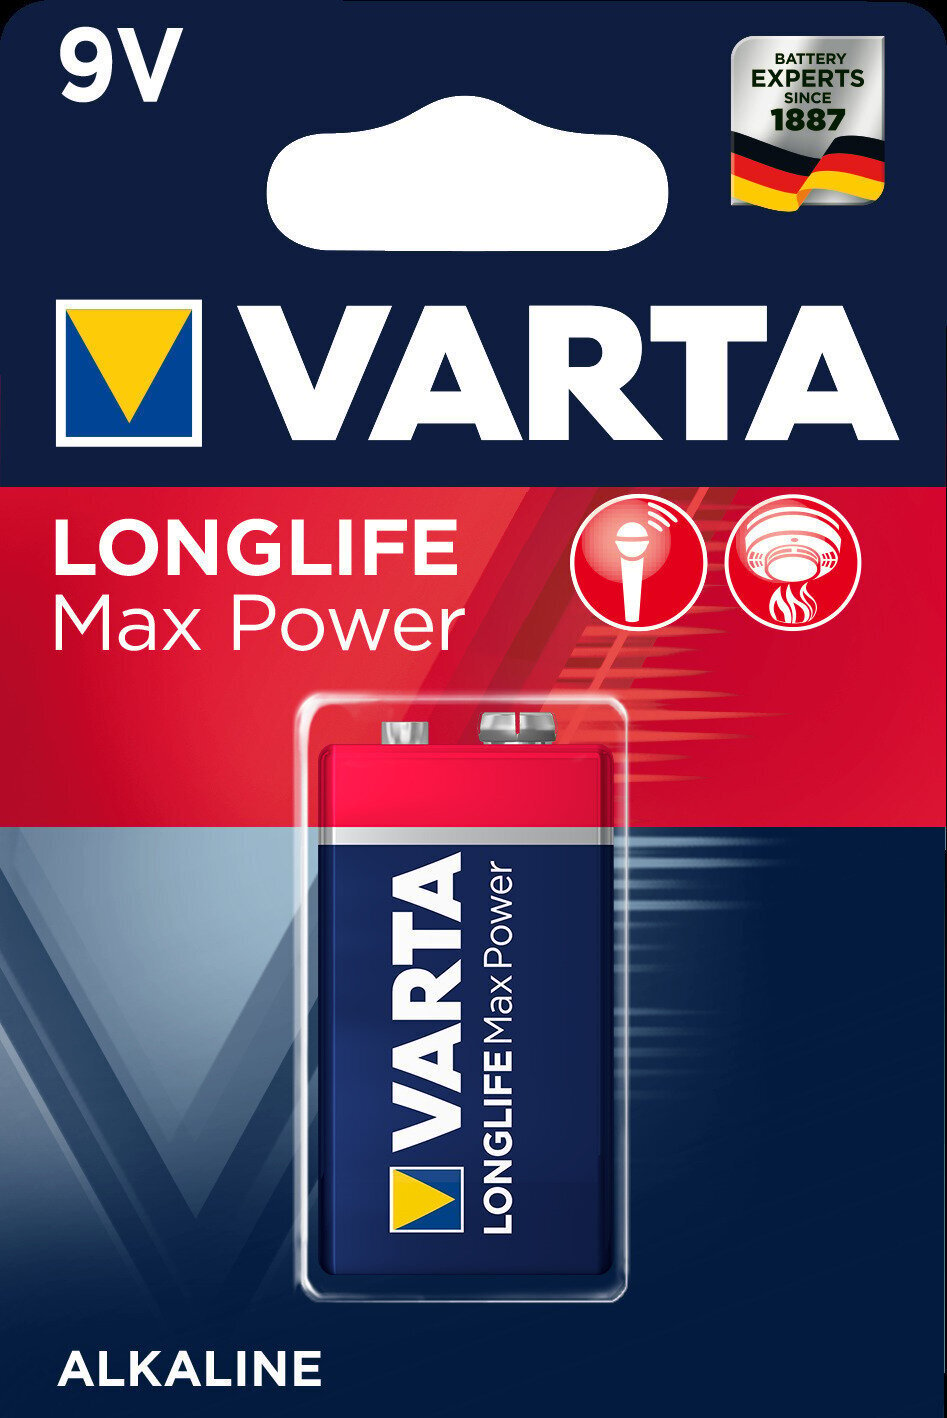 Bateria de 9V Varta Bateria de 9V 6F22 Longlife Max Power